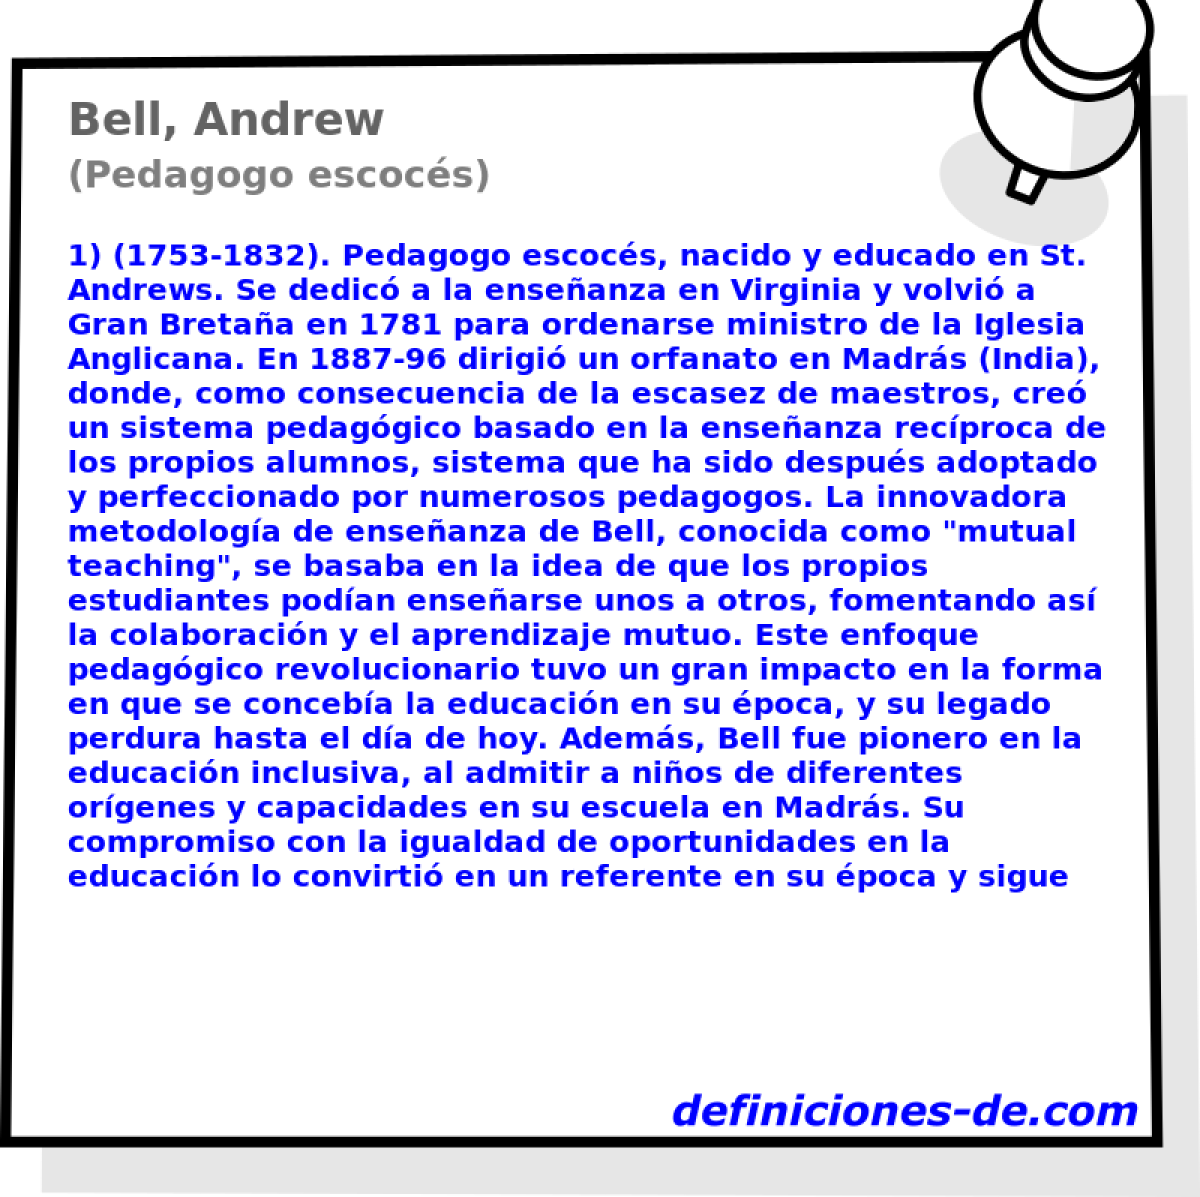 Bell, Andrew (Pedagogo escocs)